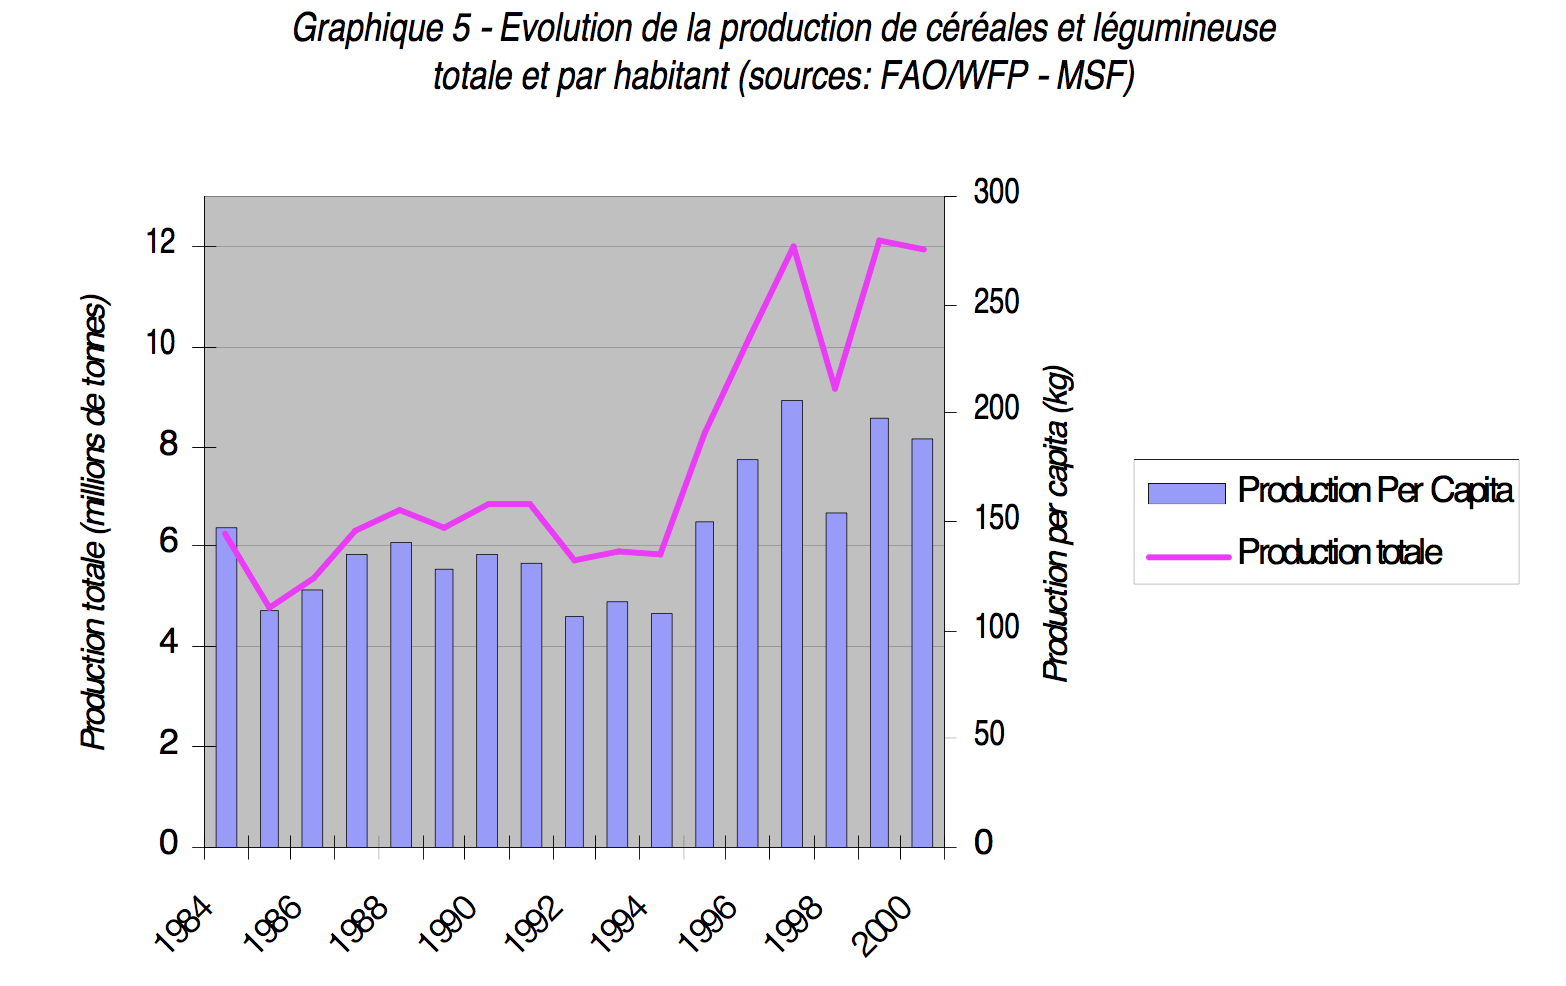 Graphique 5: Evolution de la production de céréales et de légumineuses